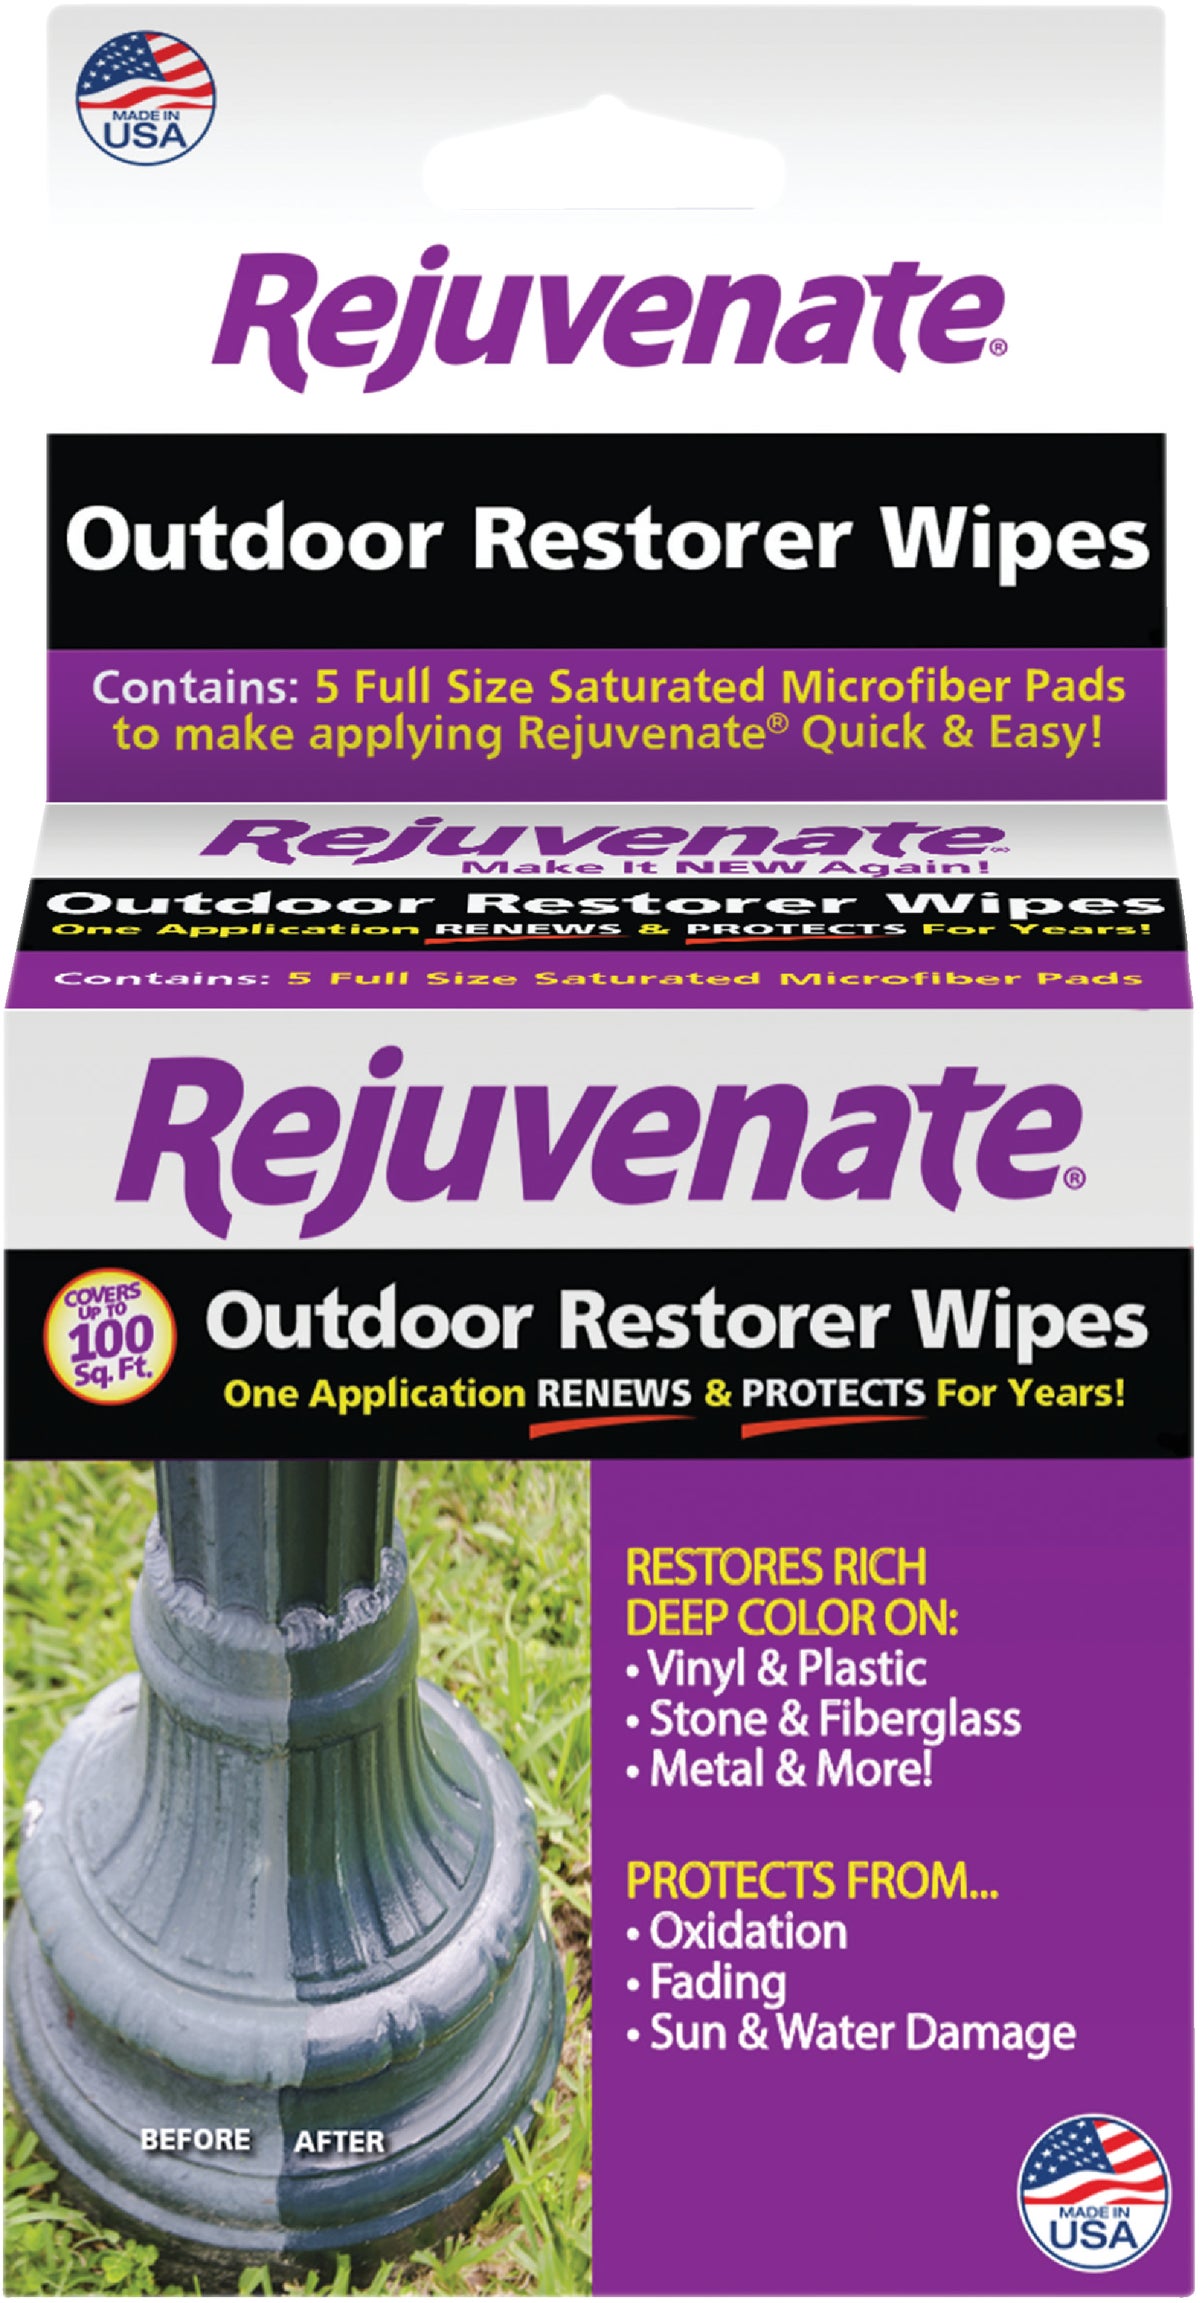 Rejuvenate Outdoor Color Restorer